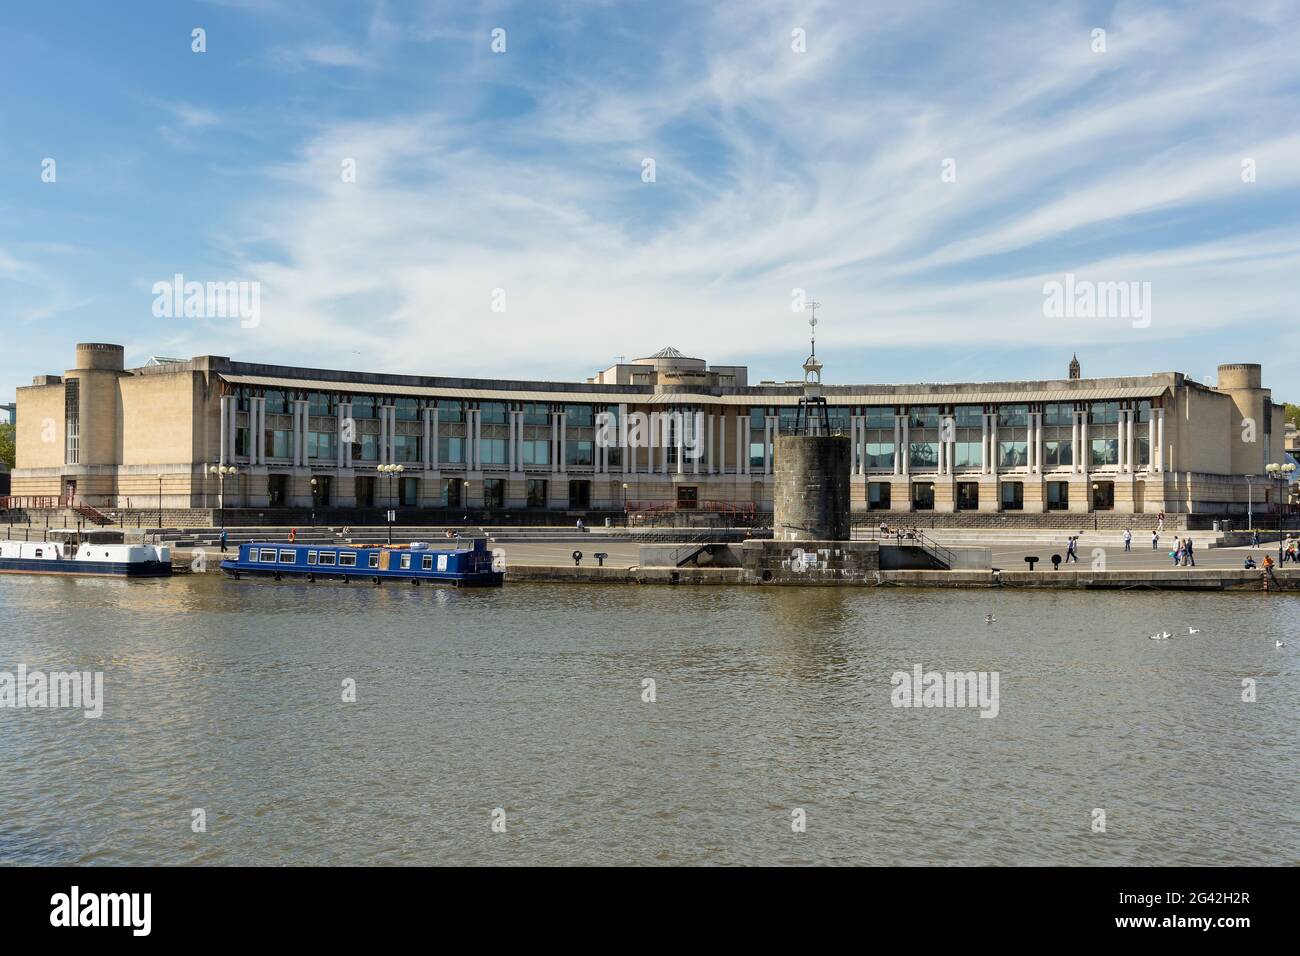 BRISTOL, Großbritannien - 14. Mai: Blick auf eine Bank Gebäude entlang des Flusses Avon in Bristol am 14. Mai 2019. Nicht identifizierte Personen Stockfoto